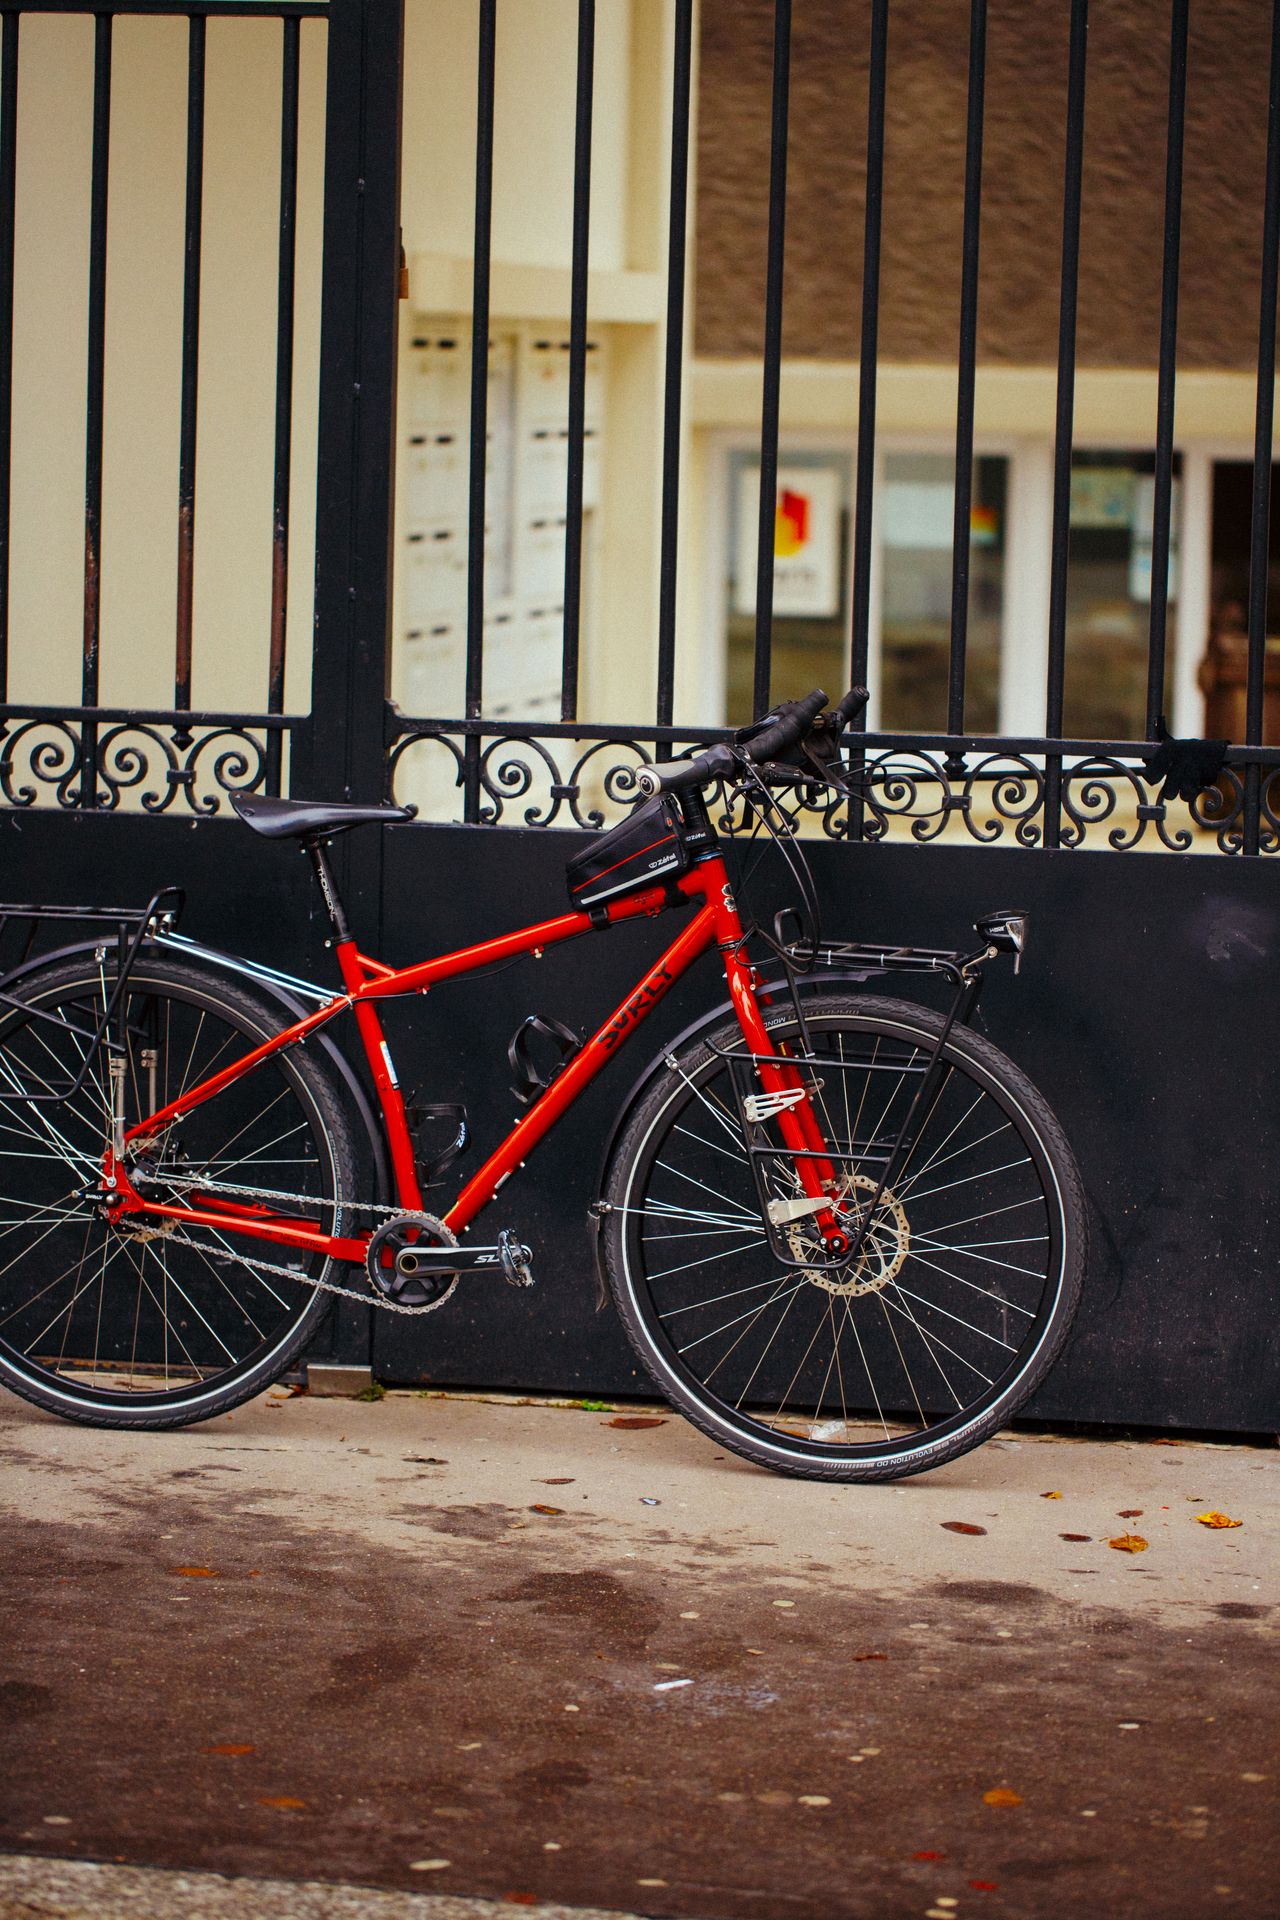 Magasin de cycles et atelier de réparation et montage vélo à la carte à Paris 13eme spécialisé dans le gravel et le voyage. Surly Ogre dédié au voyage à velo